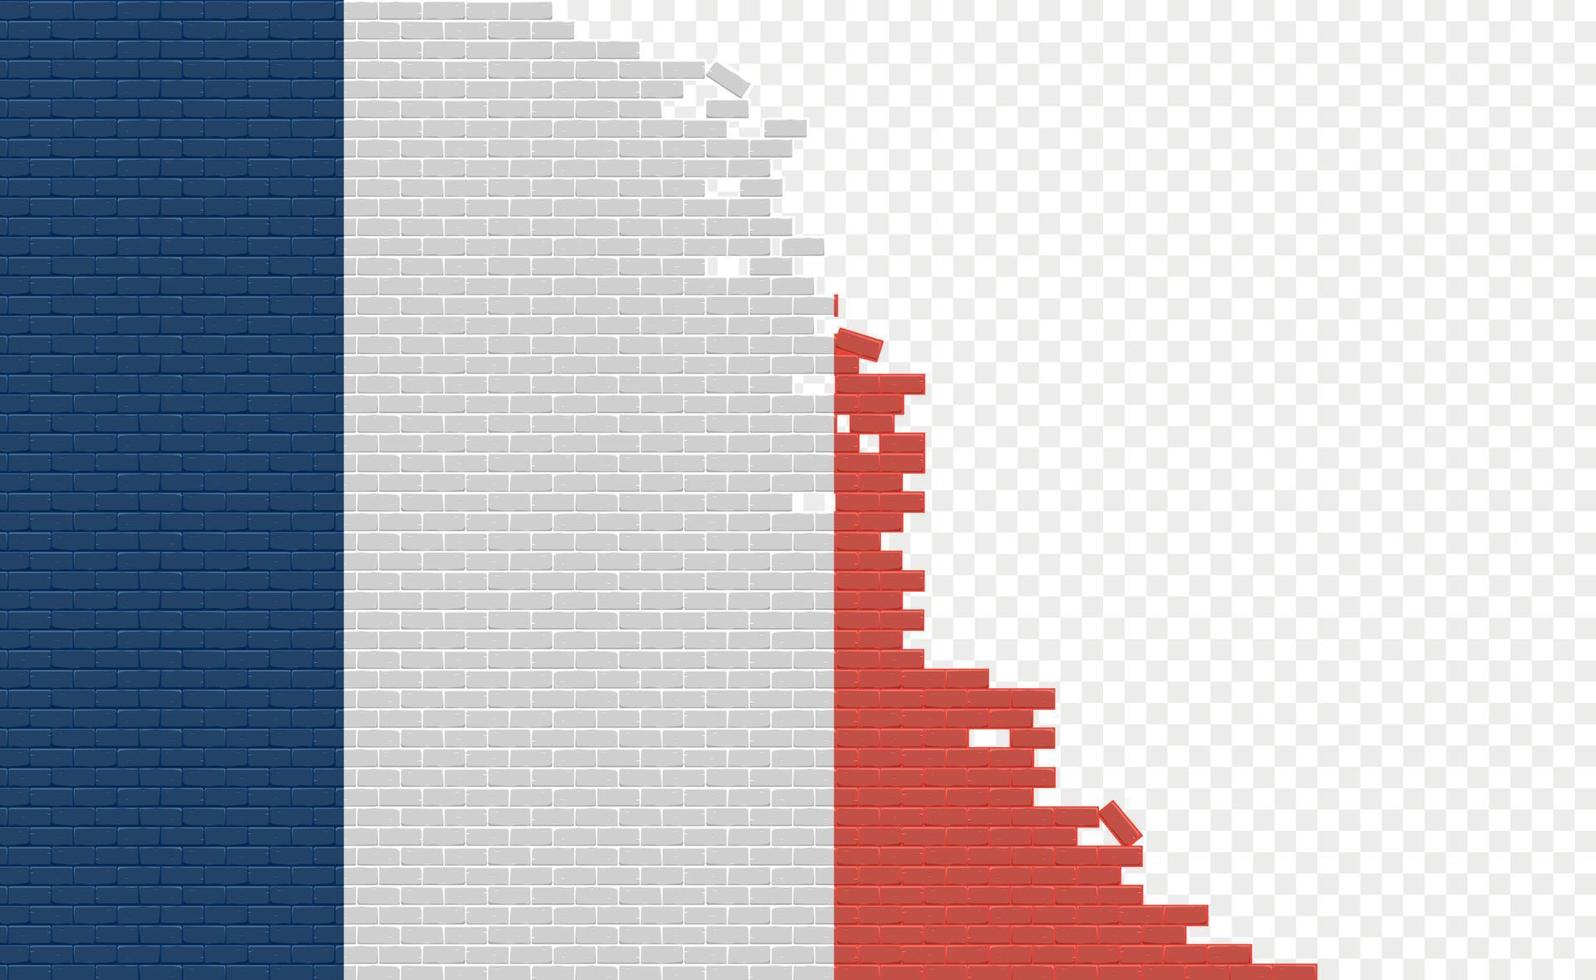 bandera de francia en la pared de ladrillos rotos. campo de bandera vacío de otro país. comparación de países. fácil edición y vector en grupos.